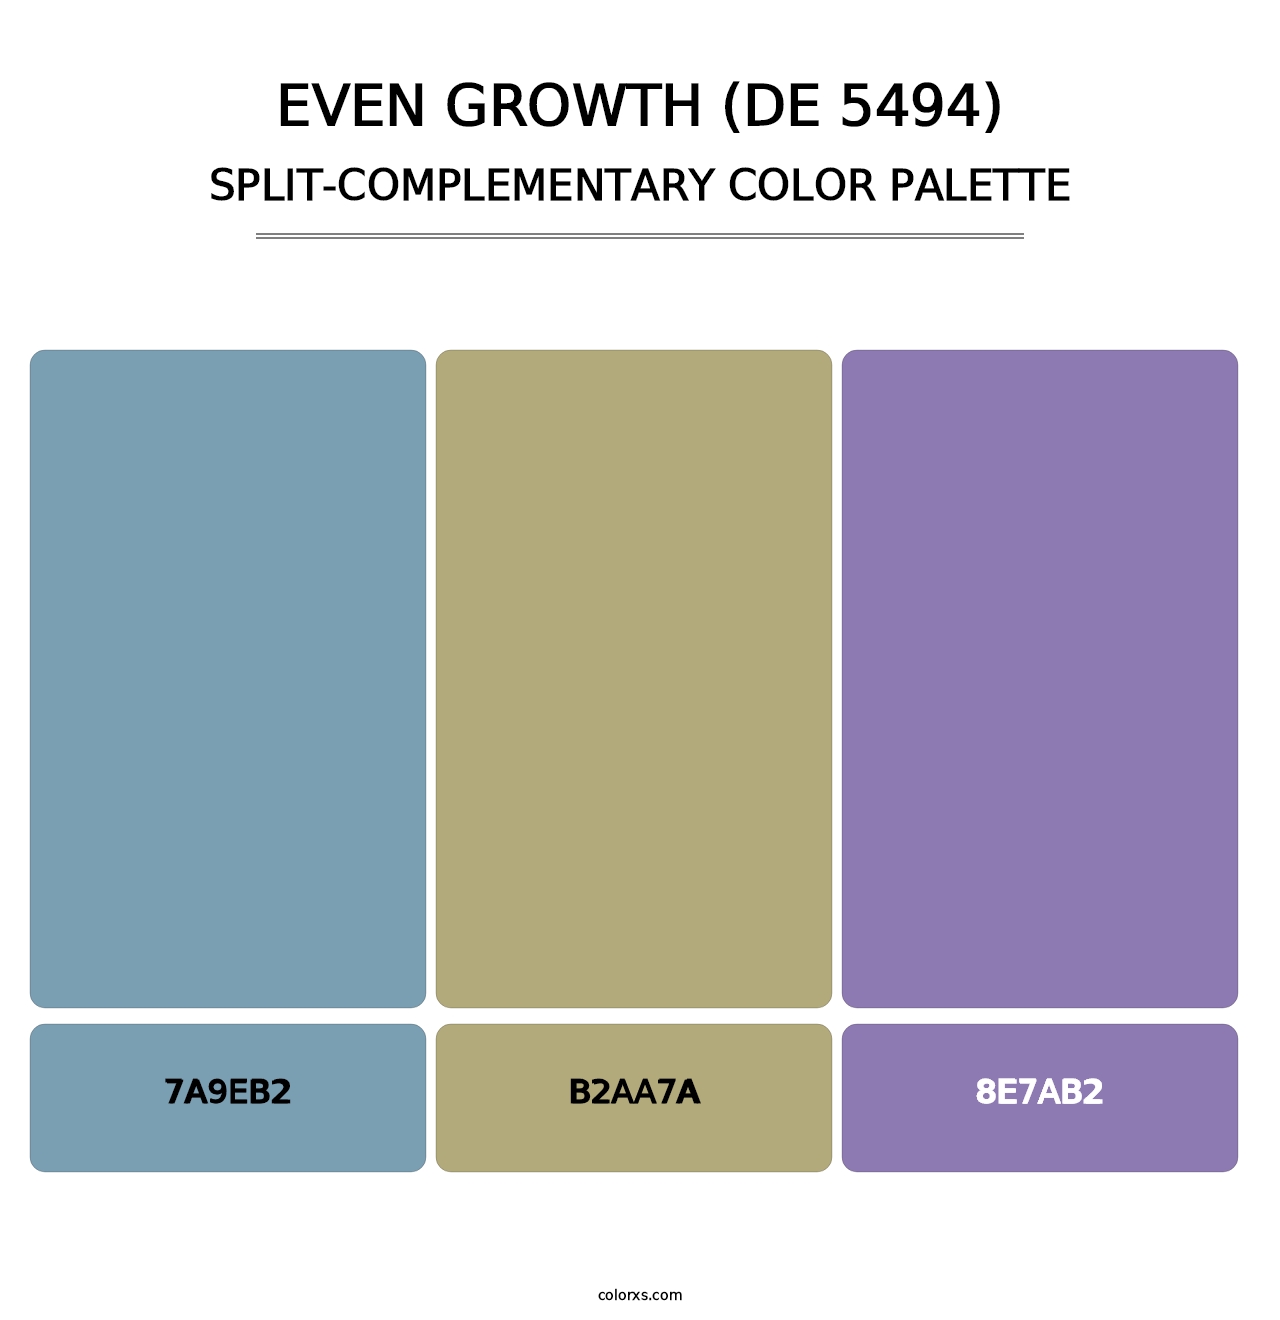 Even Growth (DE 5494) - Split-Complementary Color Palette